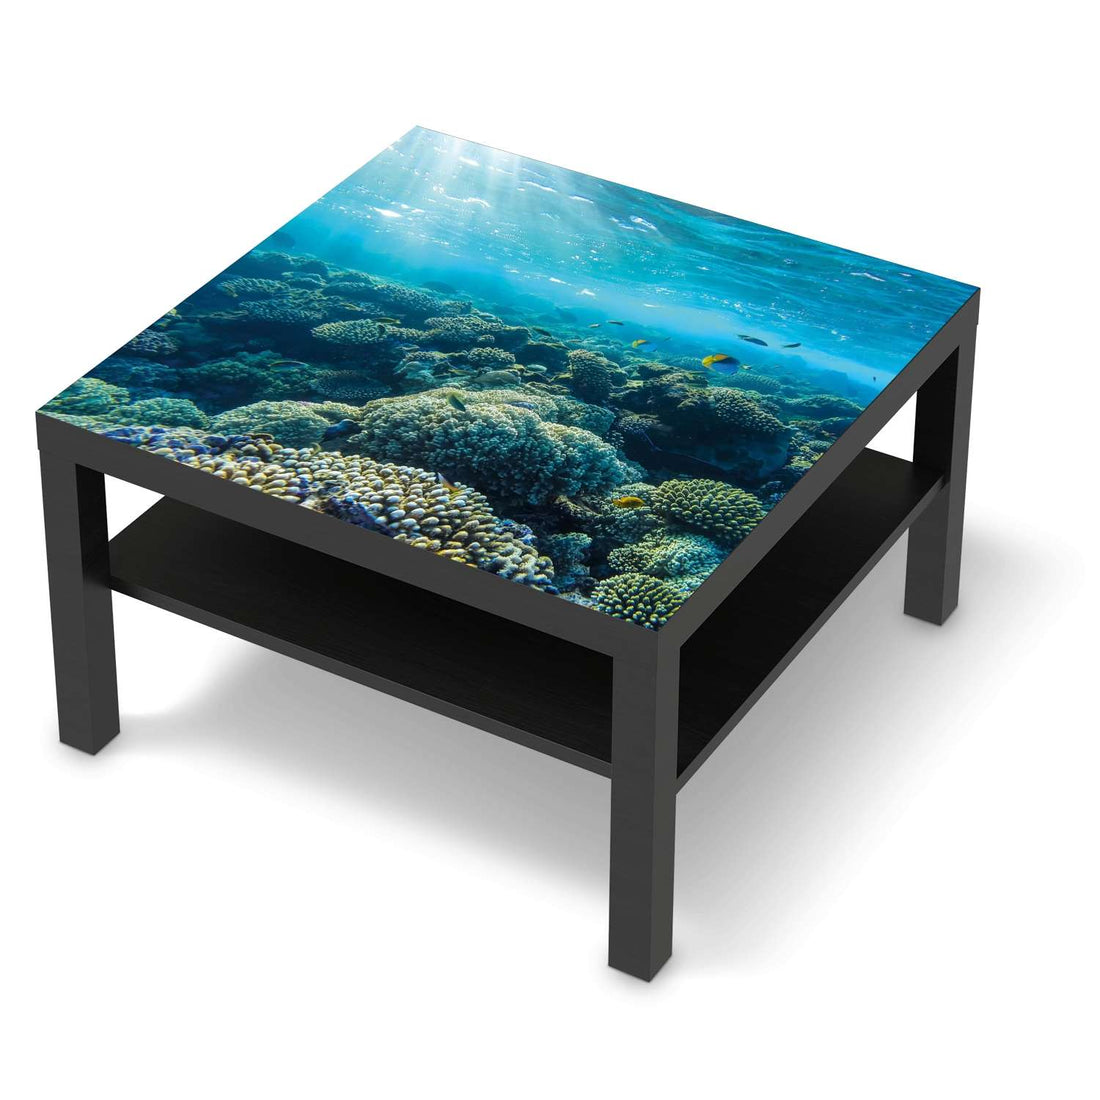 Selbstklebende Folie Underwater World - IKEA Lack Tisch 78x78 cm - schwarz